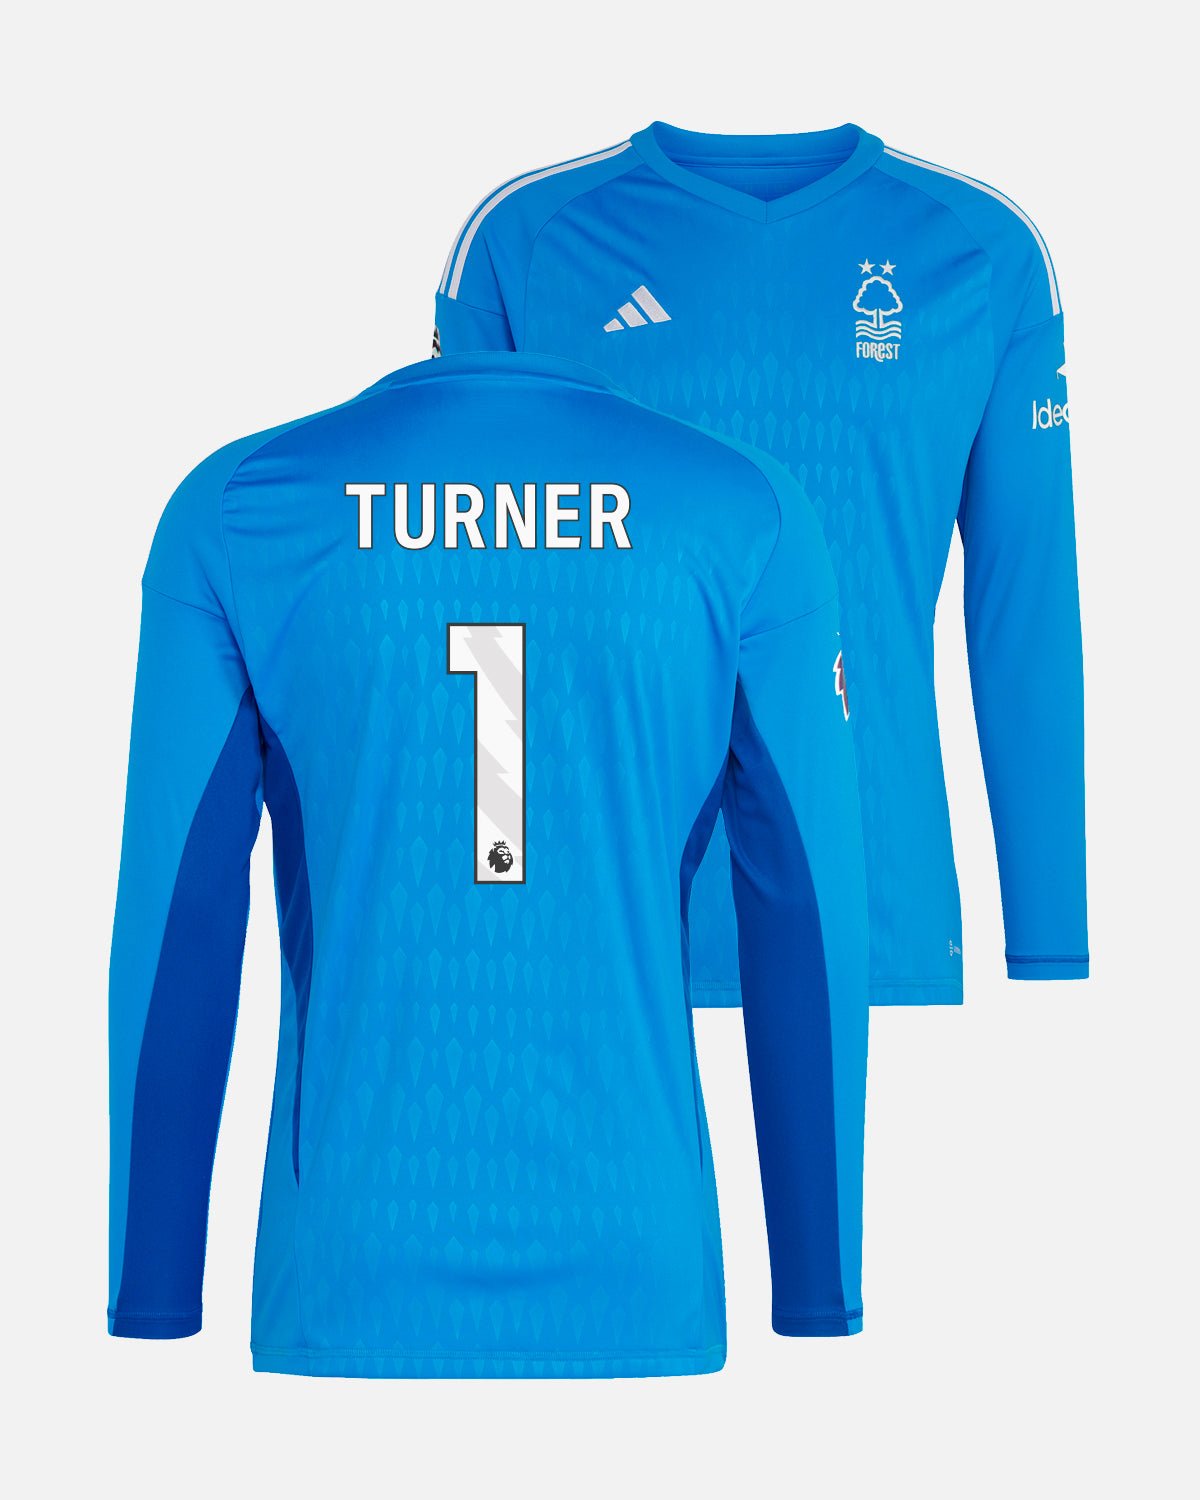 NFFC Junior Blue Goalkeeper Shirt 23-24 - Turner 1 - Nottingham Forest FC